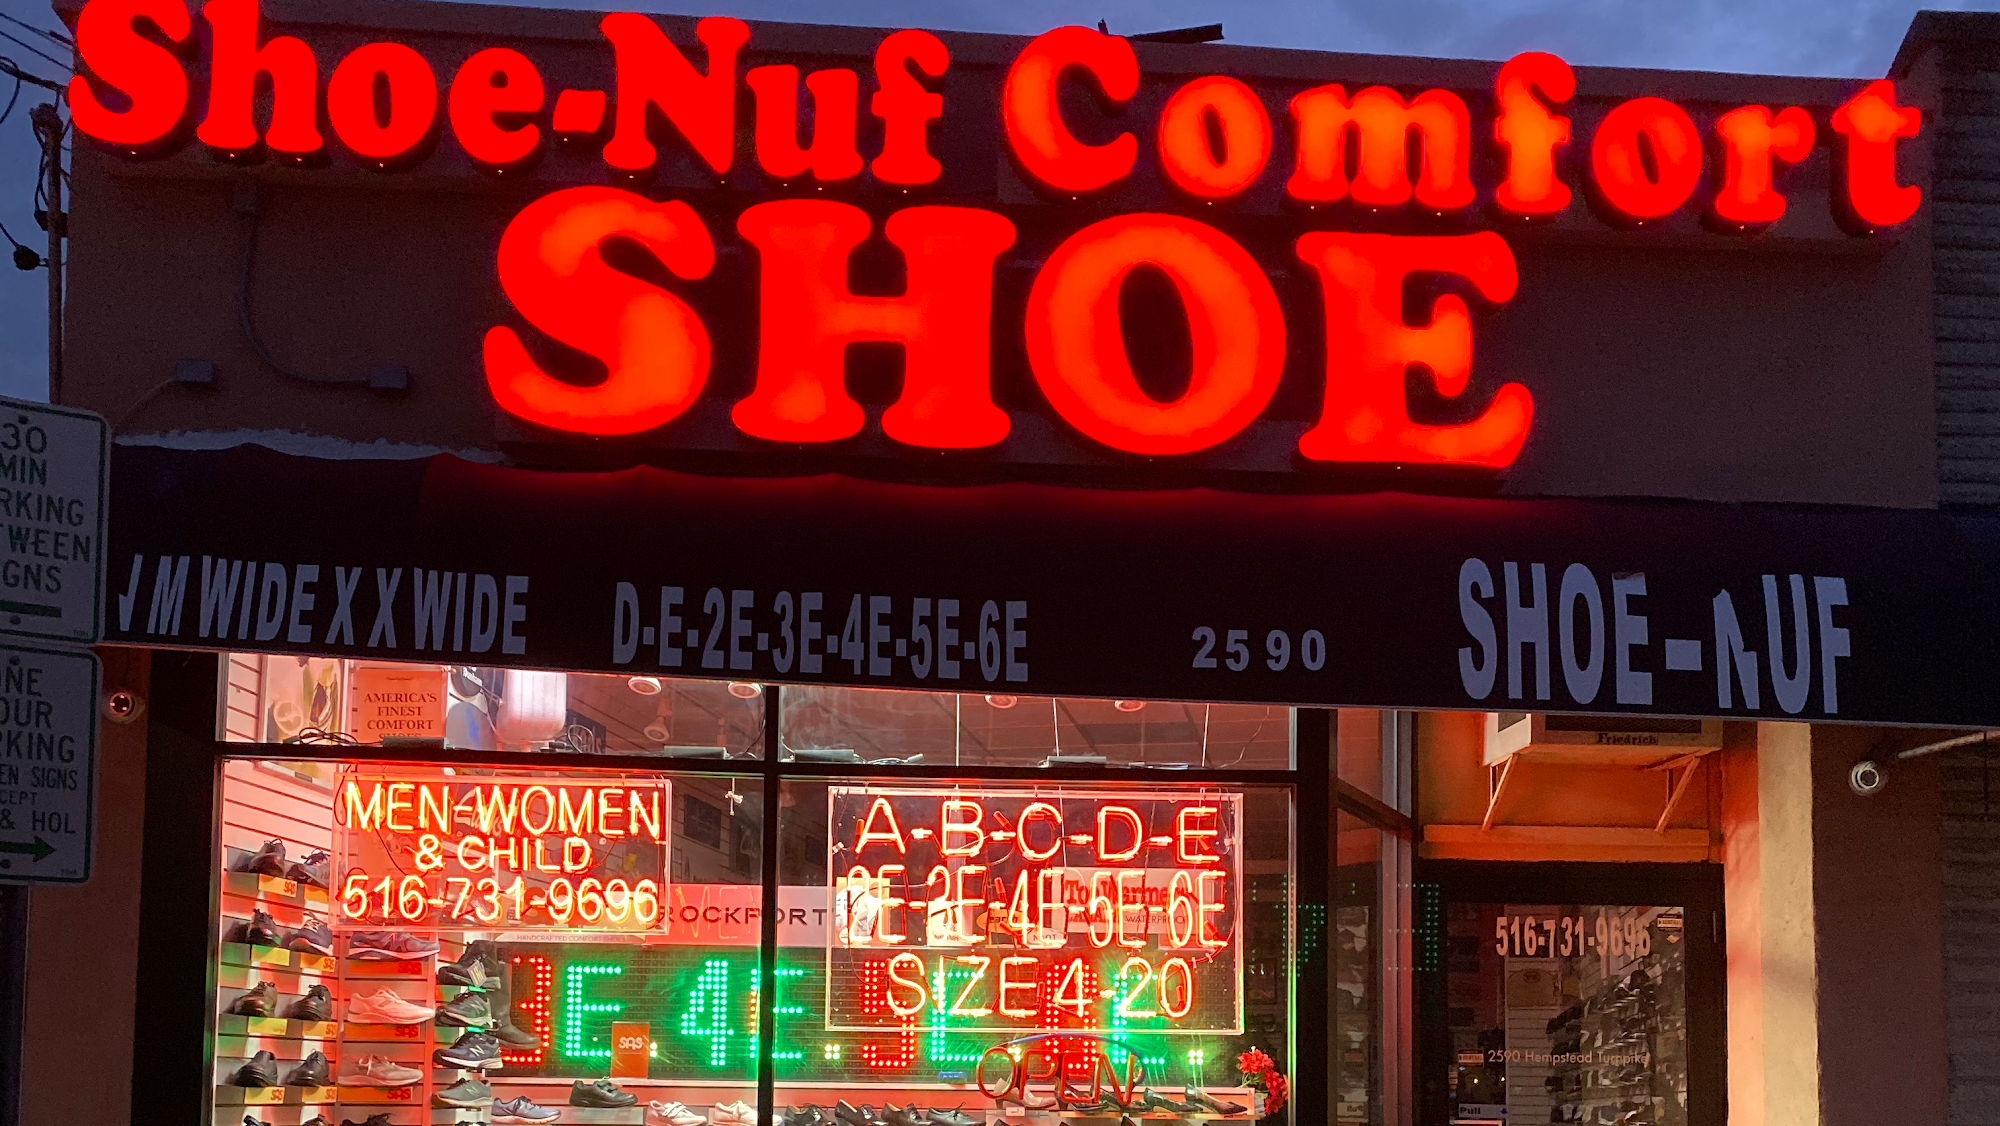 Shoe-Nuf Comfort Shoes